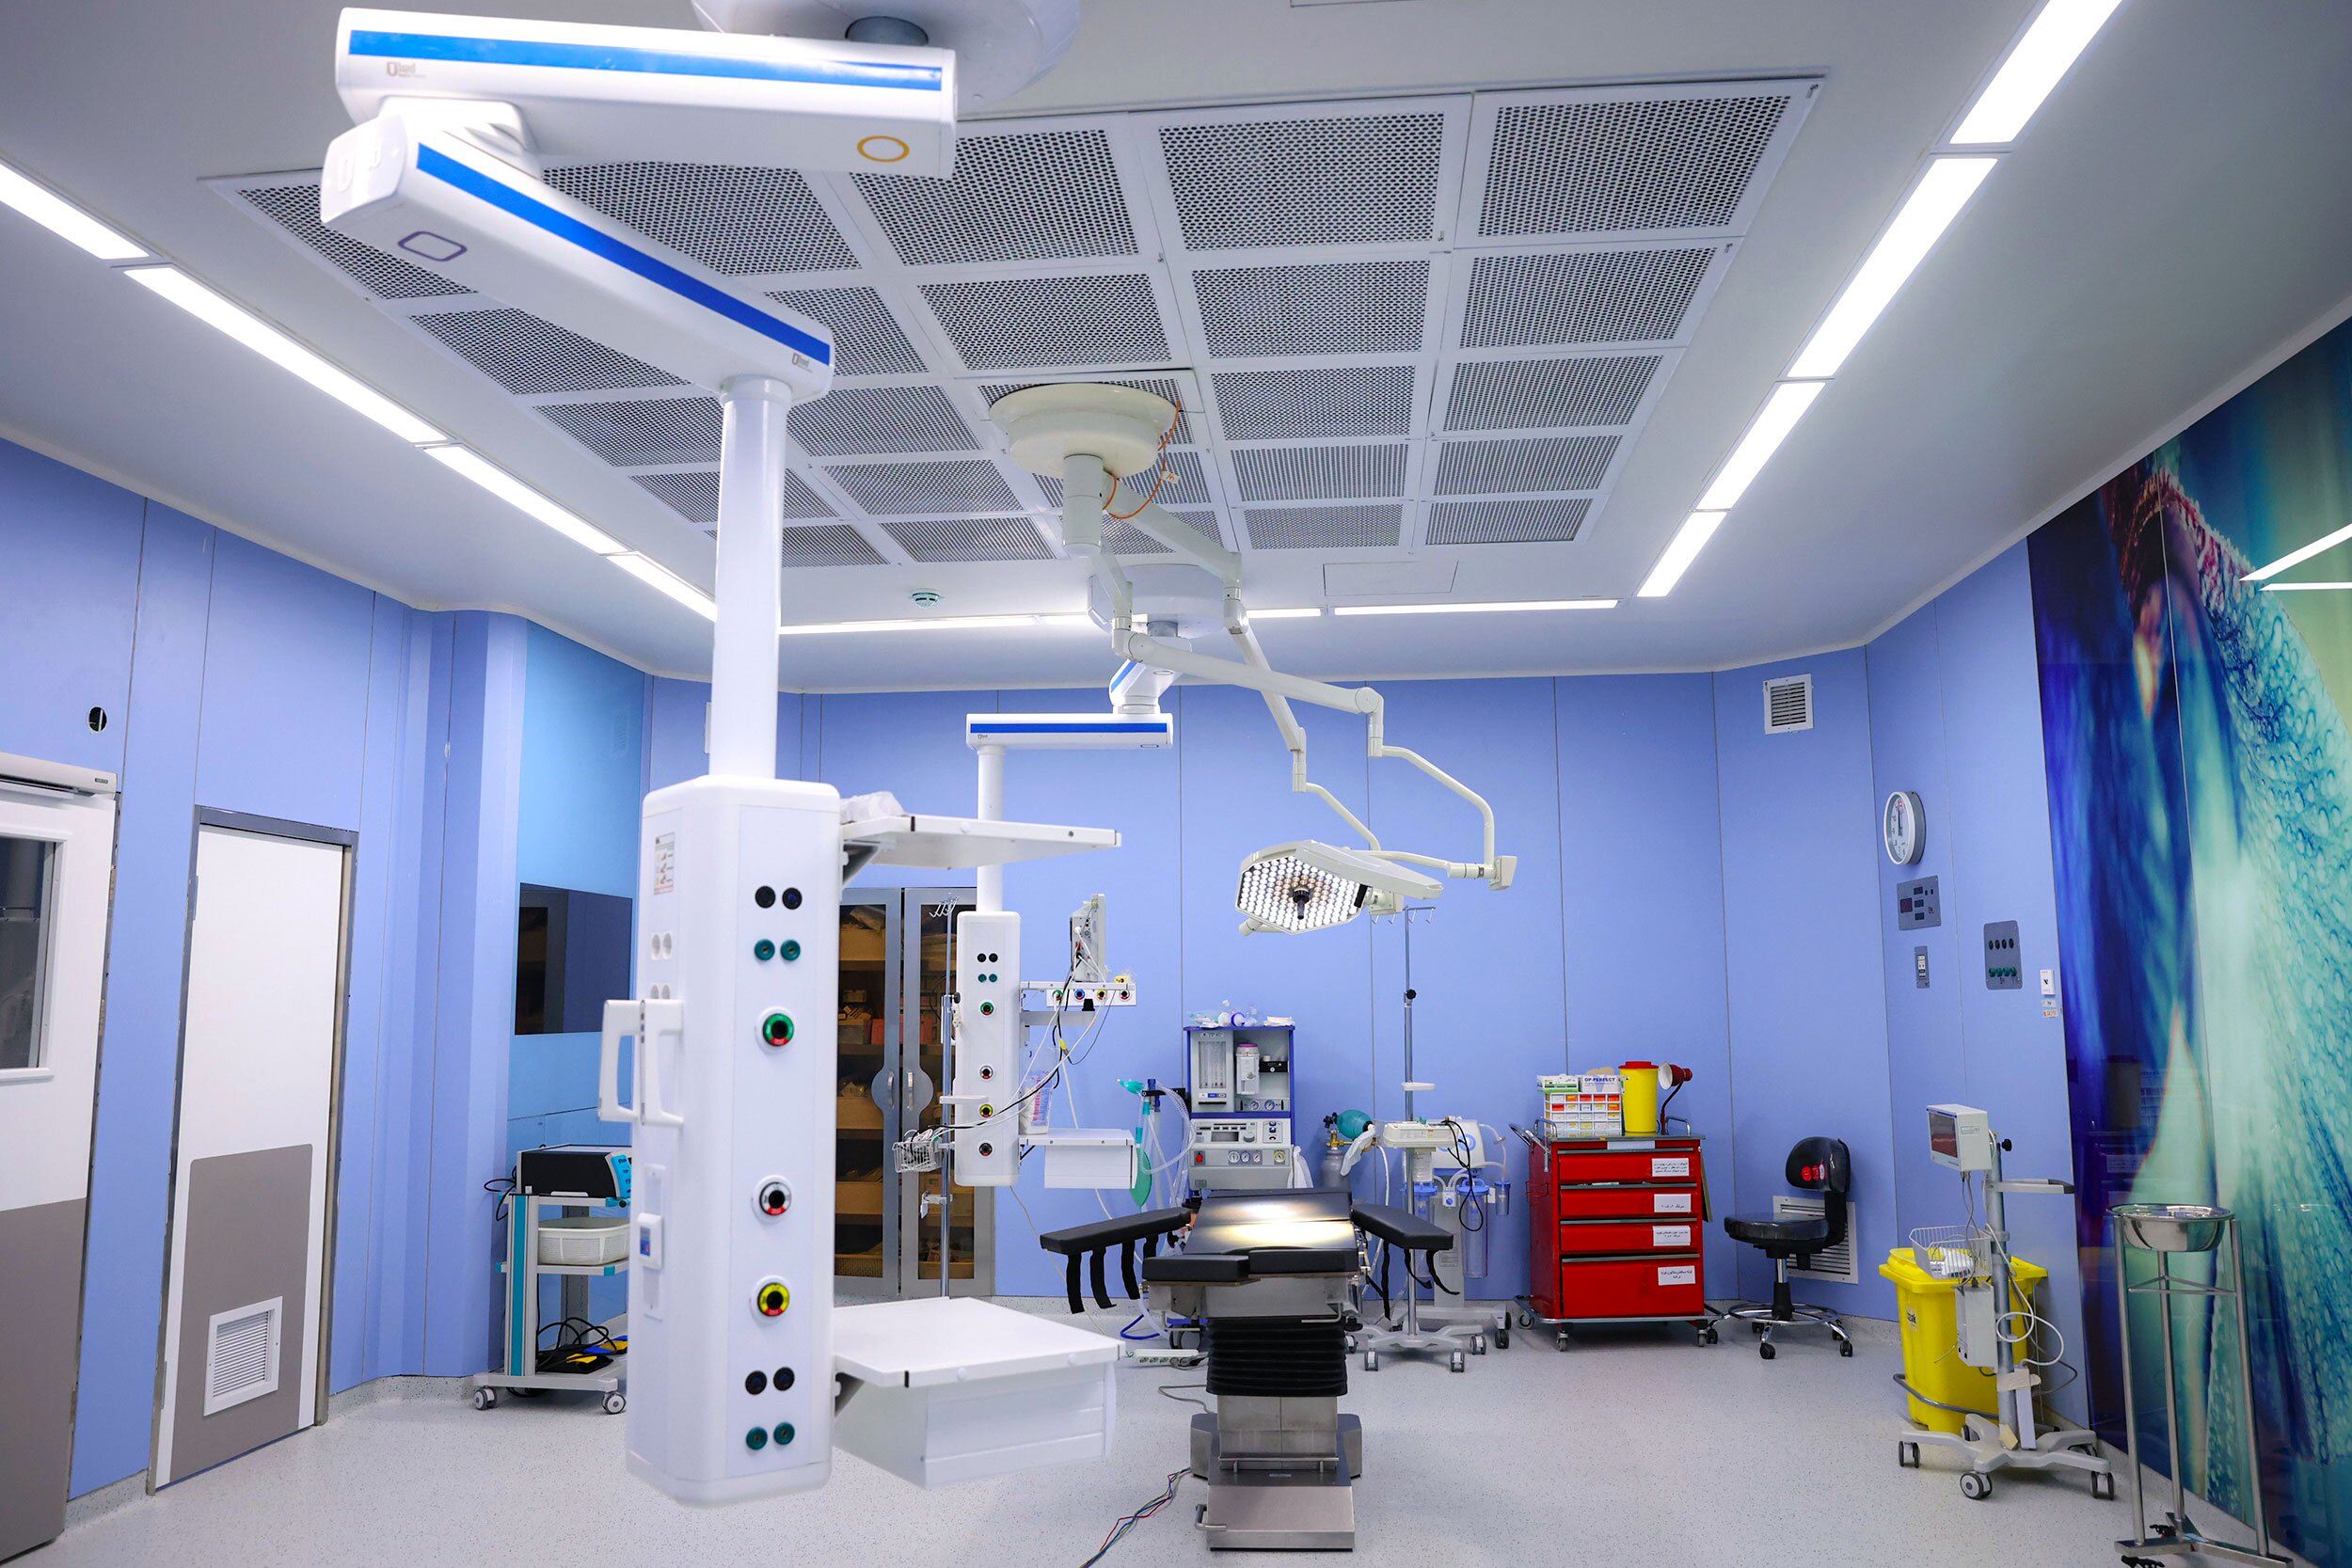 هماهنگی تجهیزات اورژانس بیمارستانی ایران با استاندارد جهانی